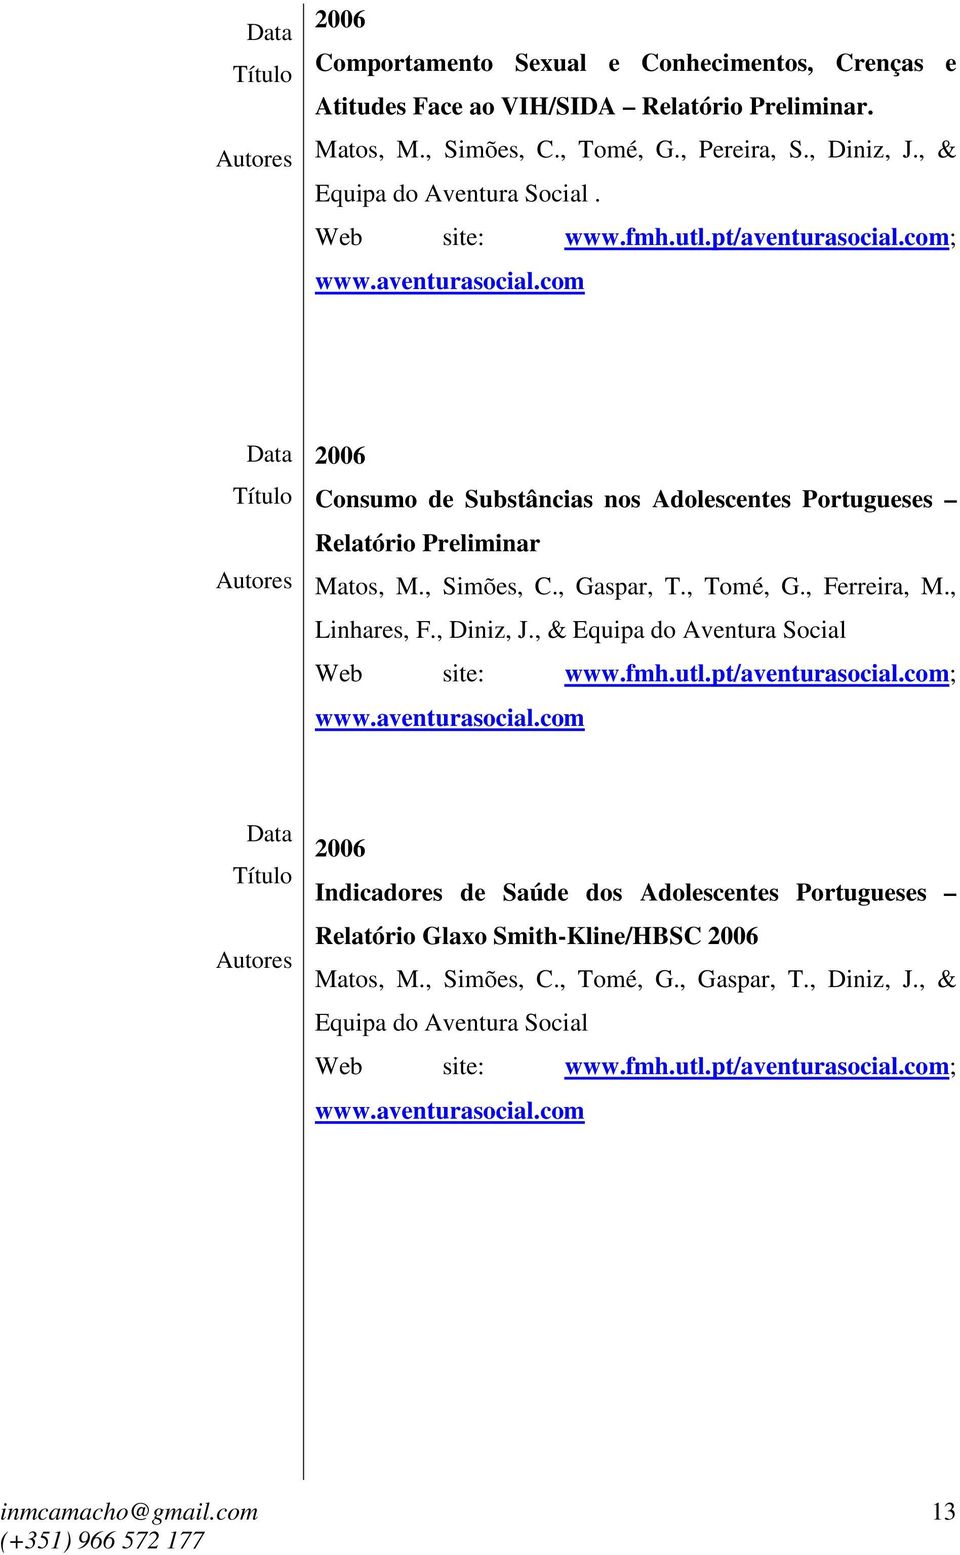 , Ferreira, M., Linhares, F., Diniz, J., & Equipa do Aventura Social Web site: www.fmh.utl.pt/aventurasocial.